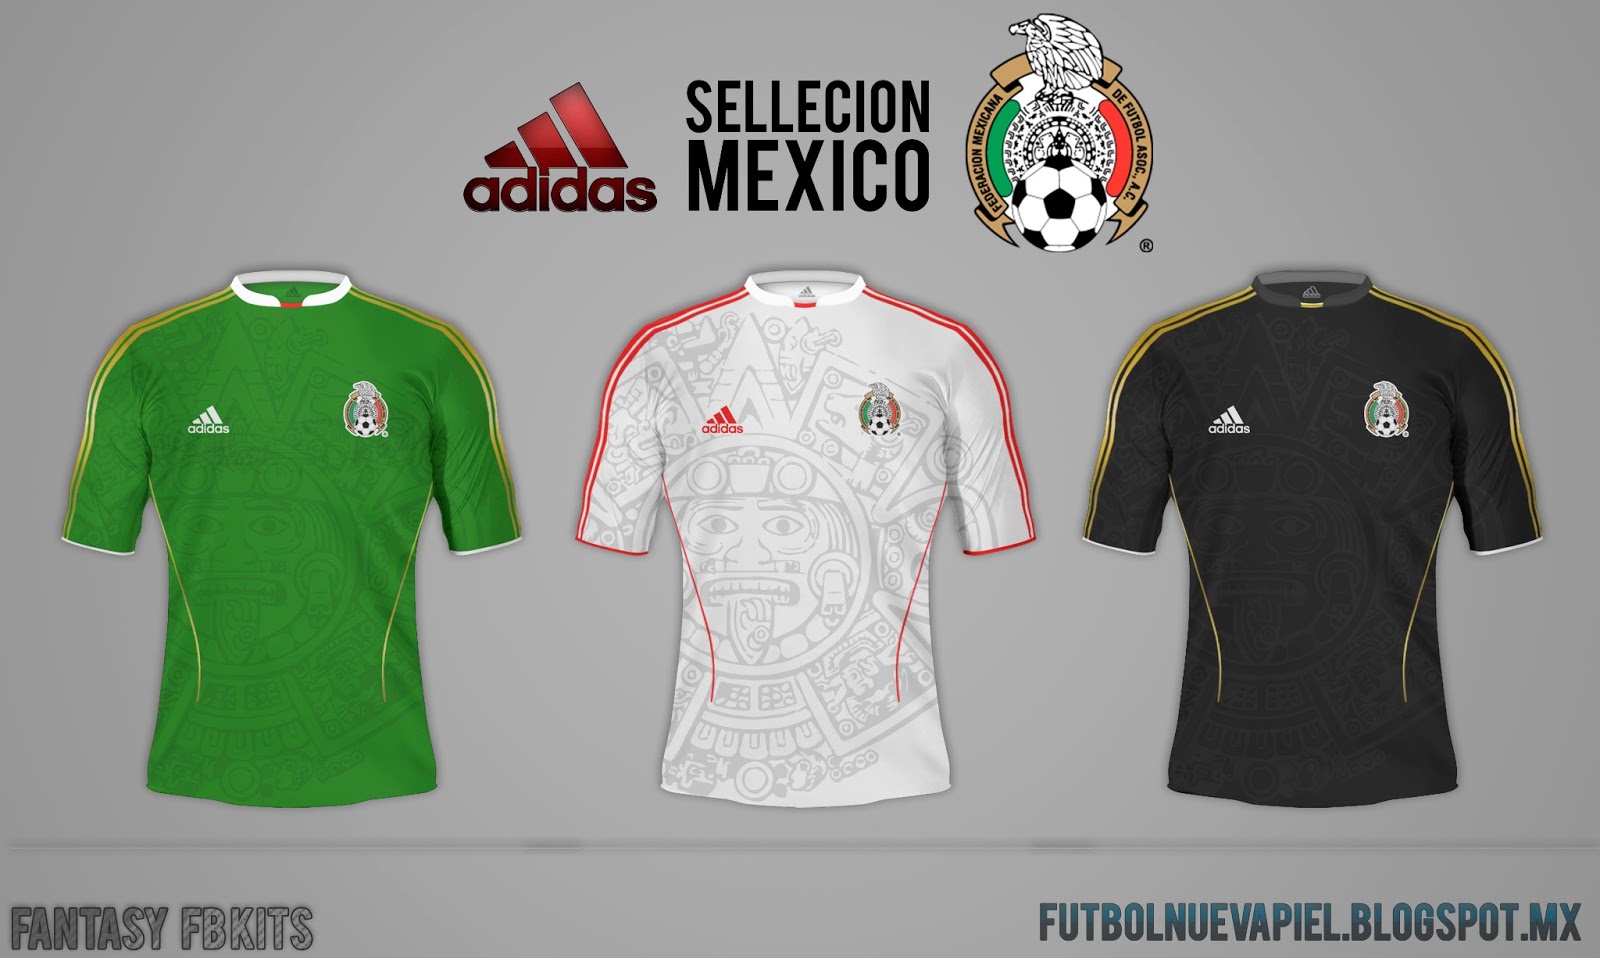 Fútbol Nueva Piel (Fb kits design) Nuevo Jersey Adidas Seleccion